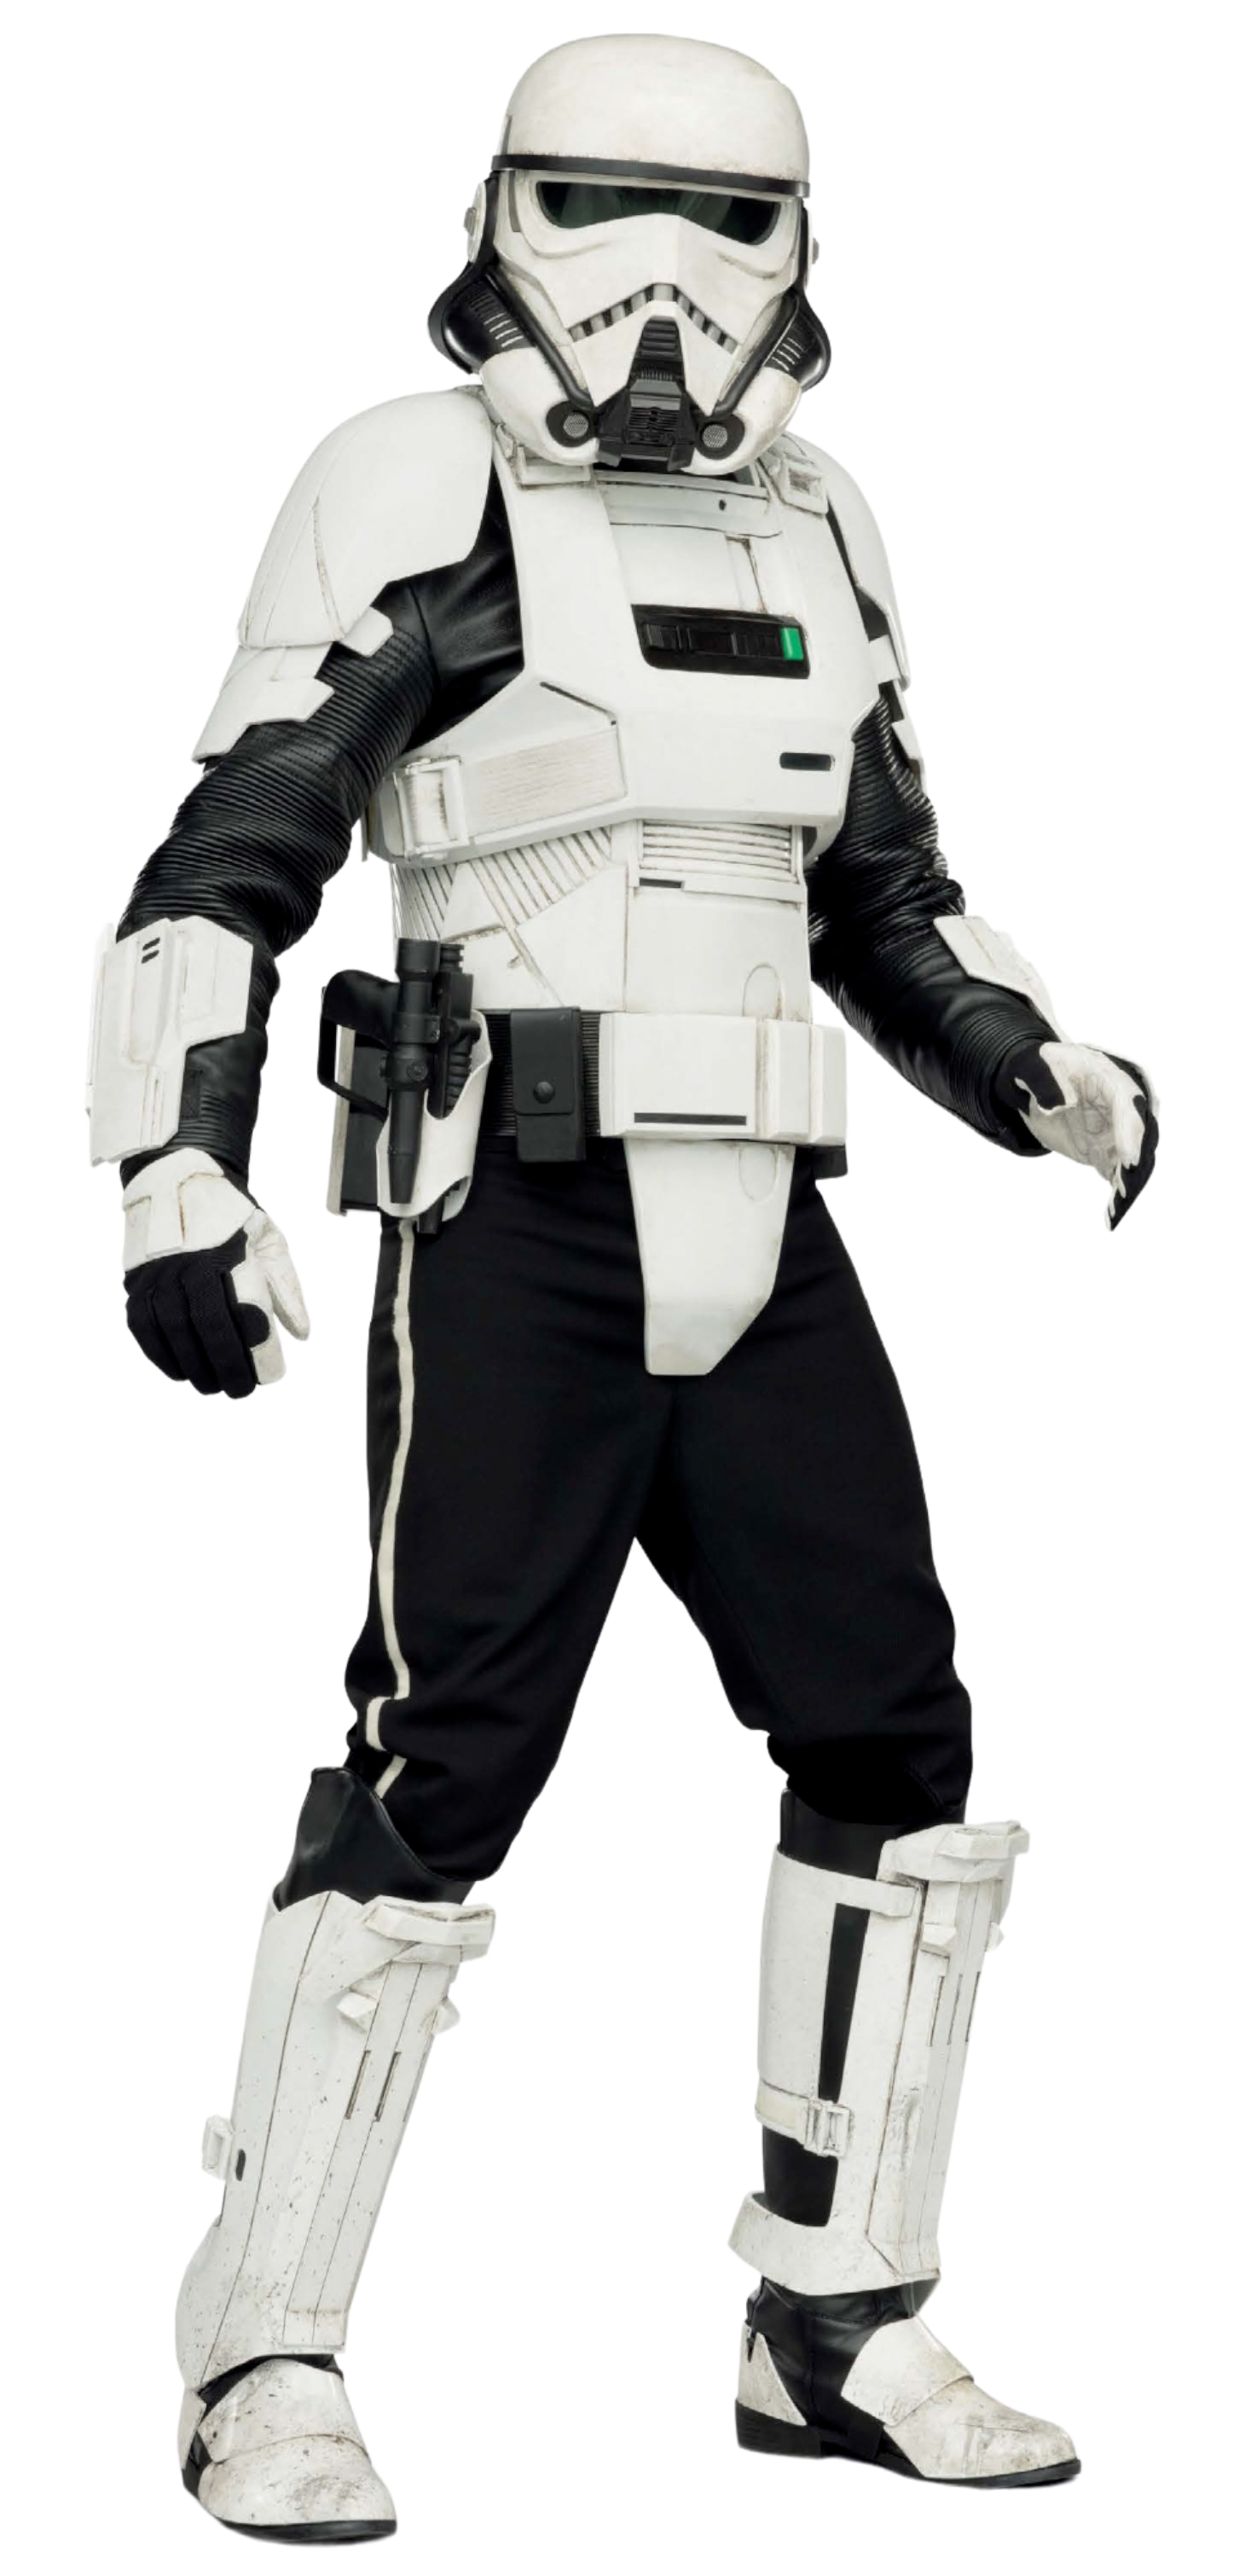 imperial star wars navy trooper